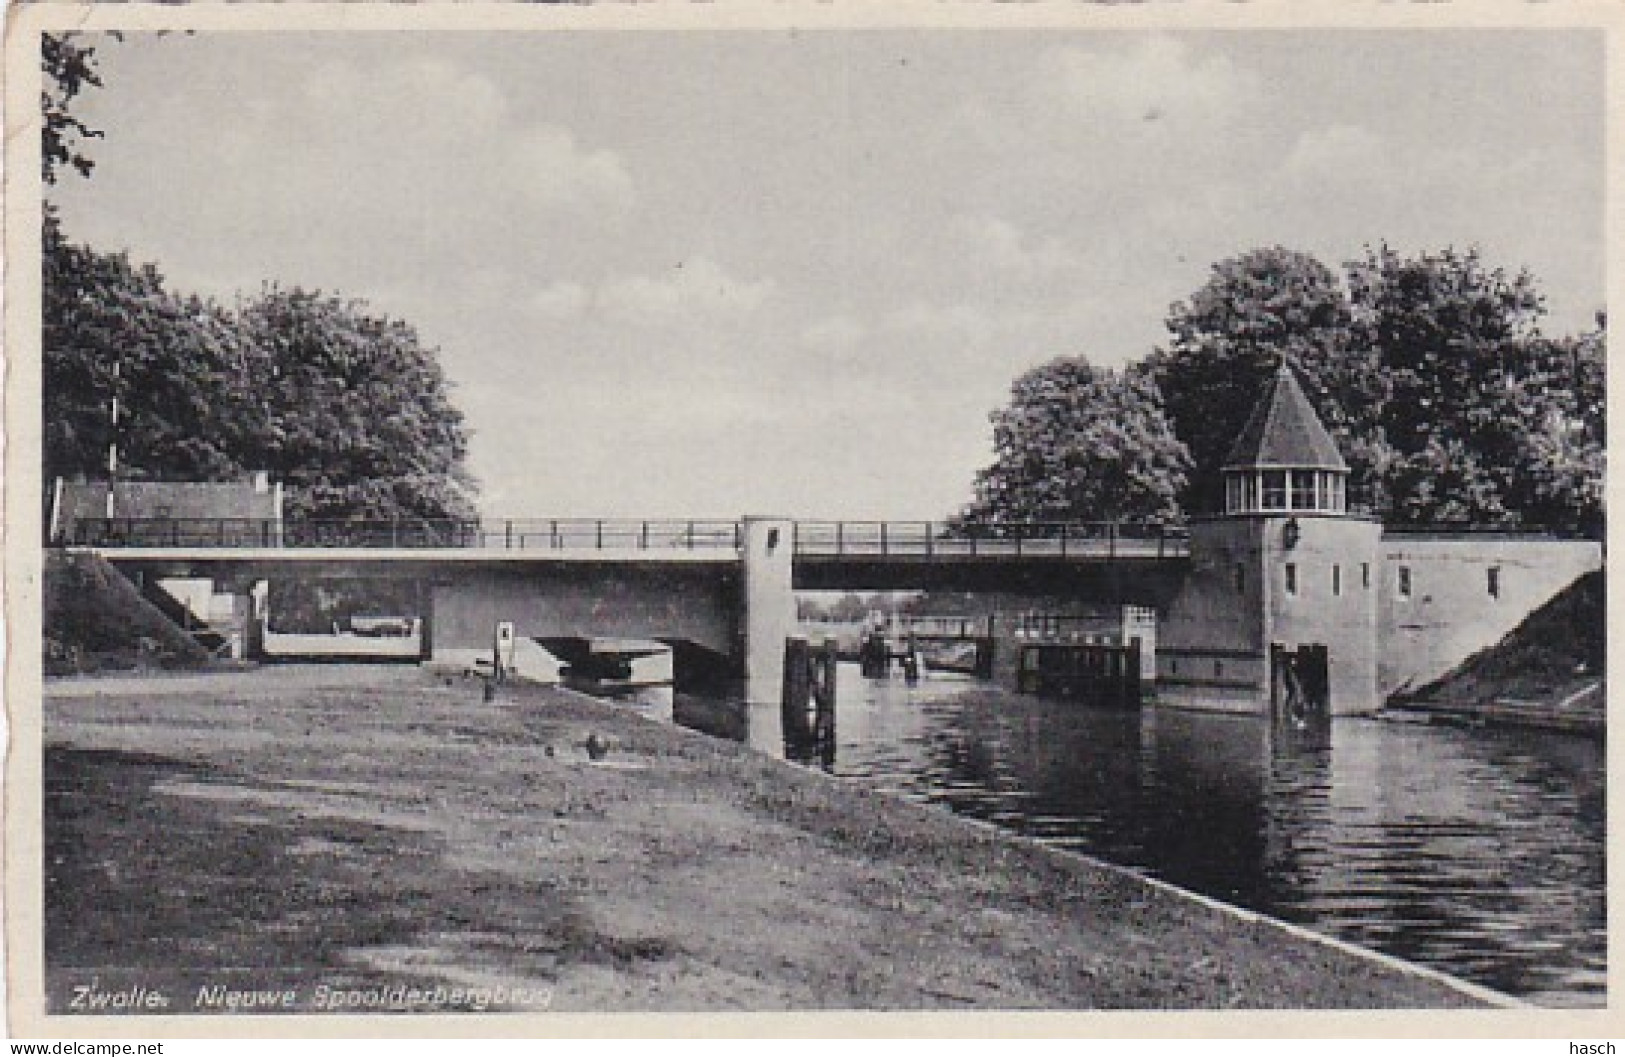 482815Zwolle, Nieuwe Spoolderberbrug. 1938.  - Zwolle